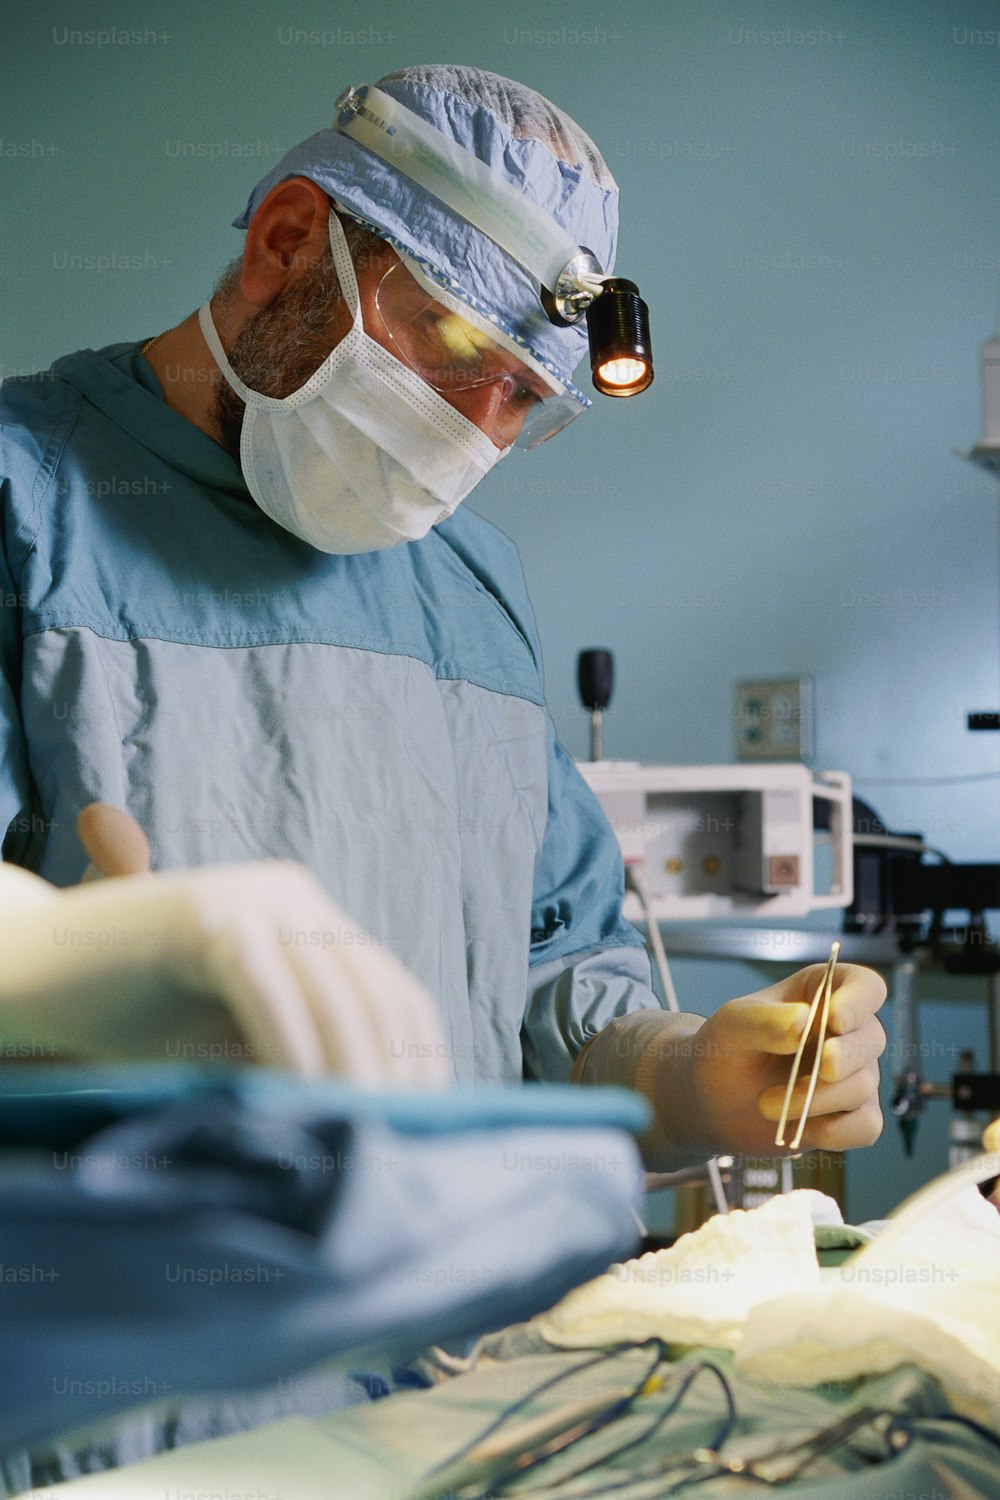 Un uomo in camice chirurgico sta eseguendo un intervento chirurgico